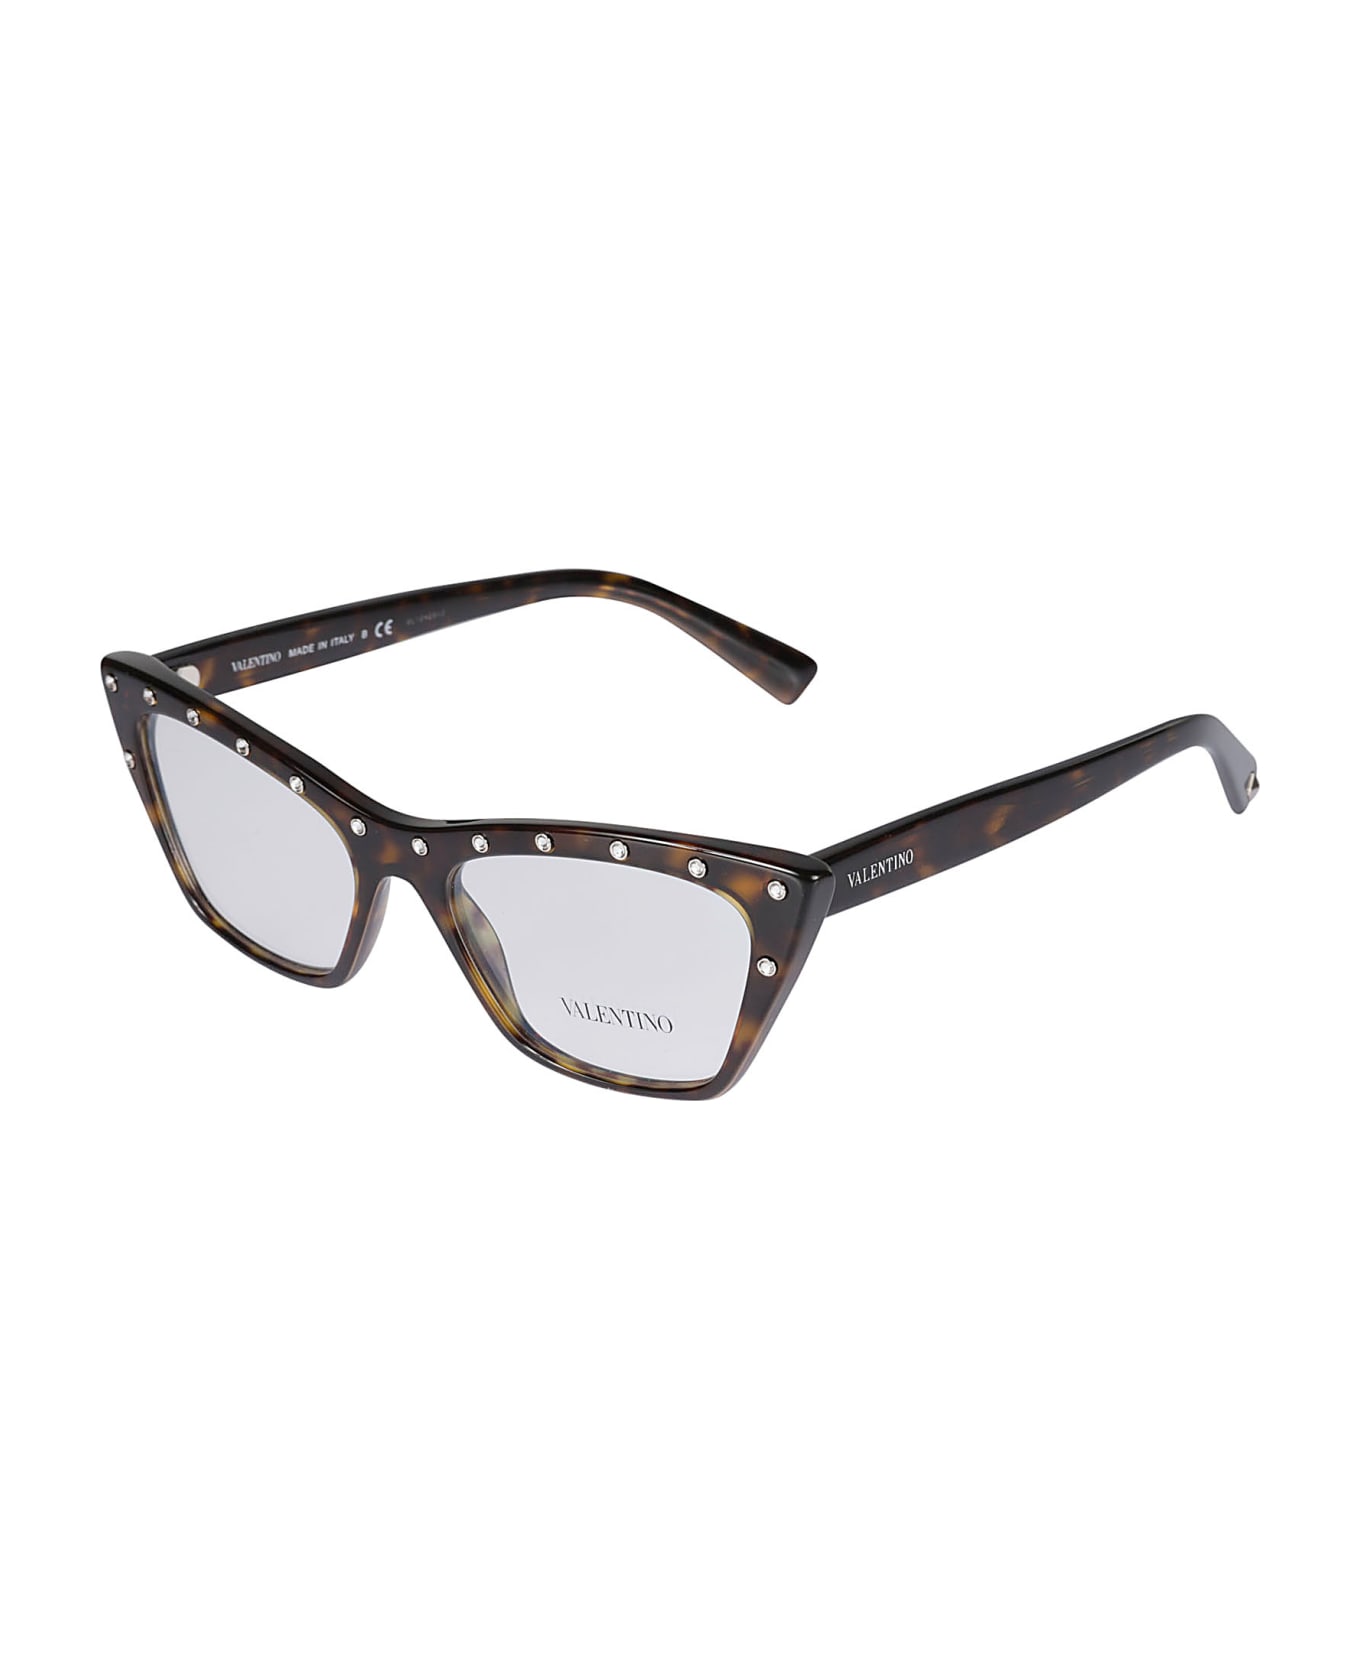 Valentino Eyewear Vista5002 Glasses - 5002 アイウェア